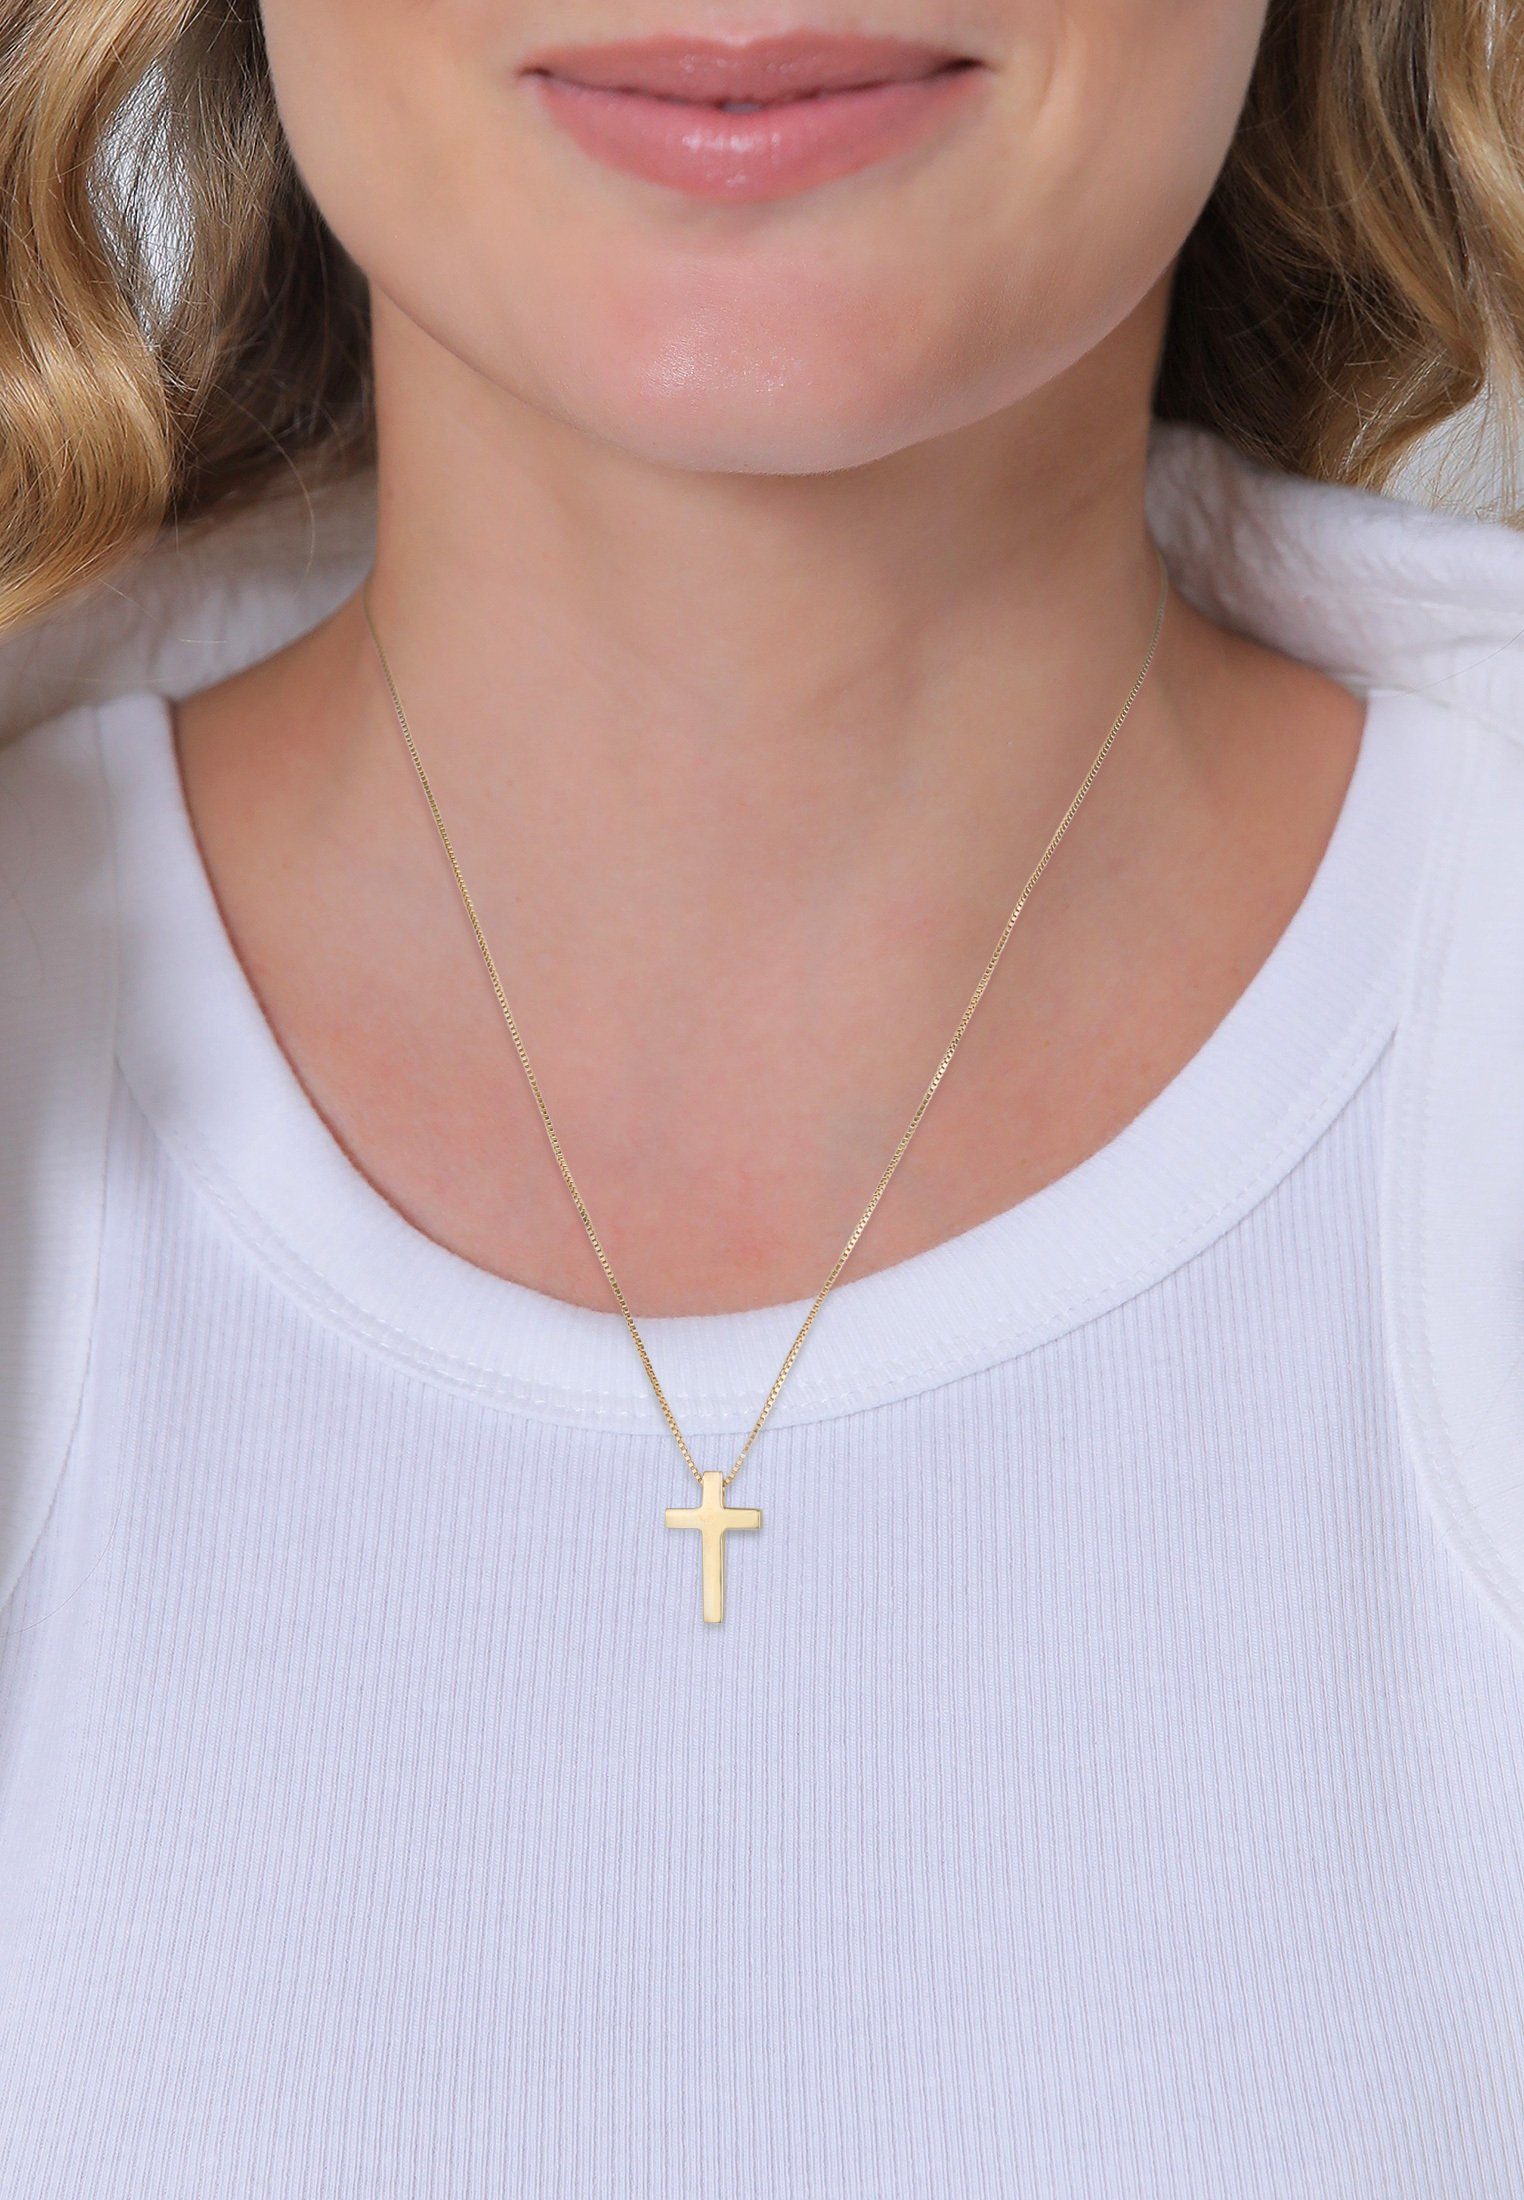 Elli Premium Kette Religion 925 Gold Silber, Unisex Basic mit Kreuz Anhänger Kreuz